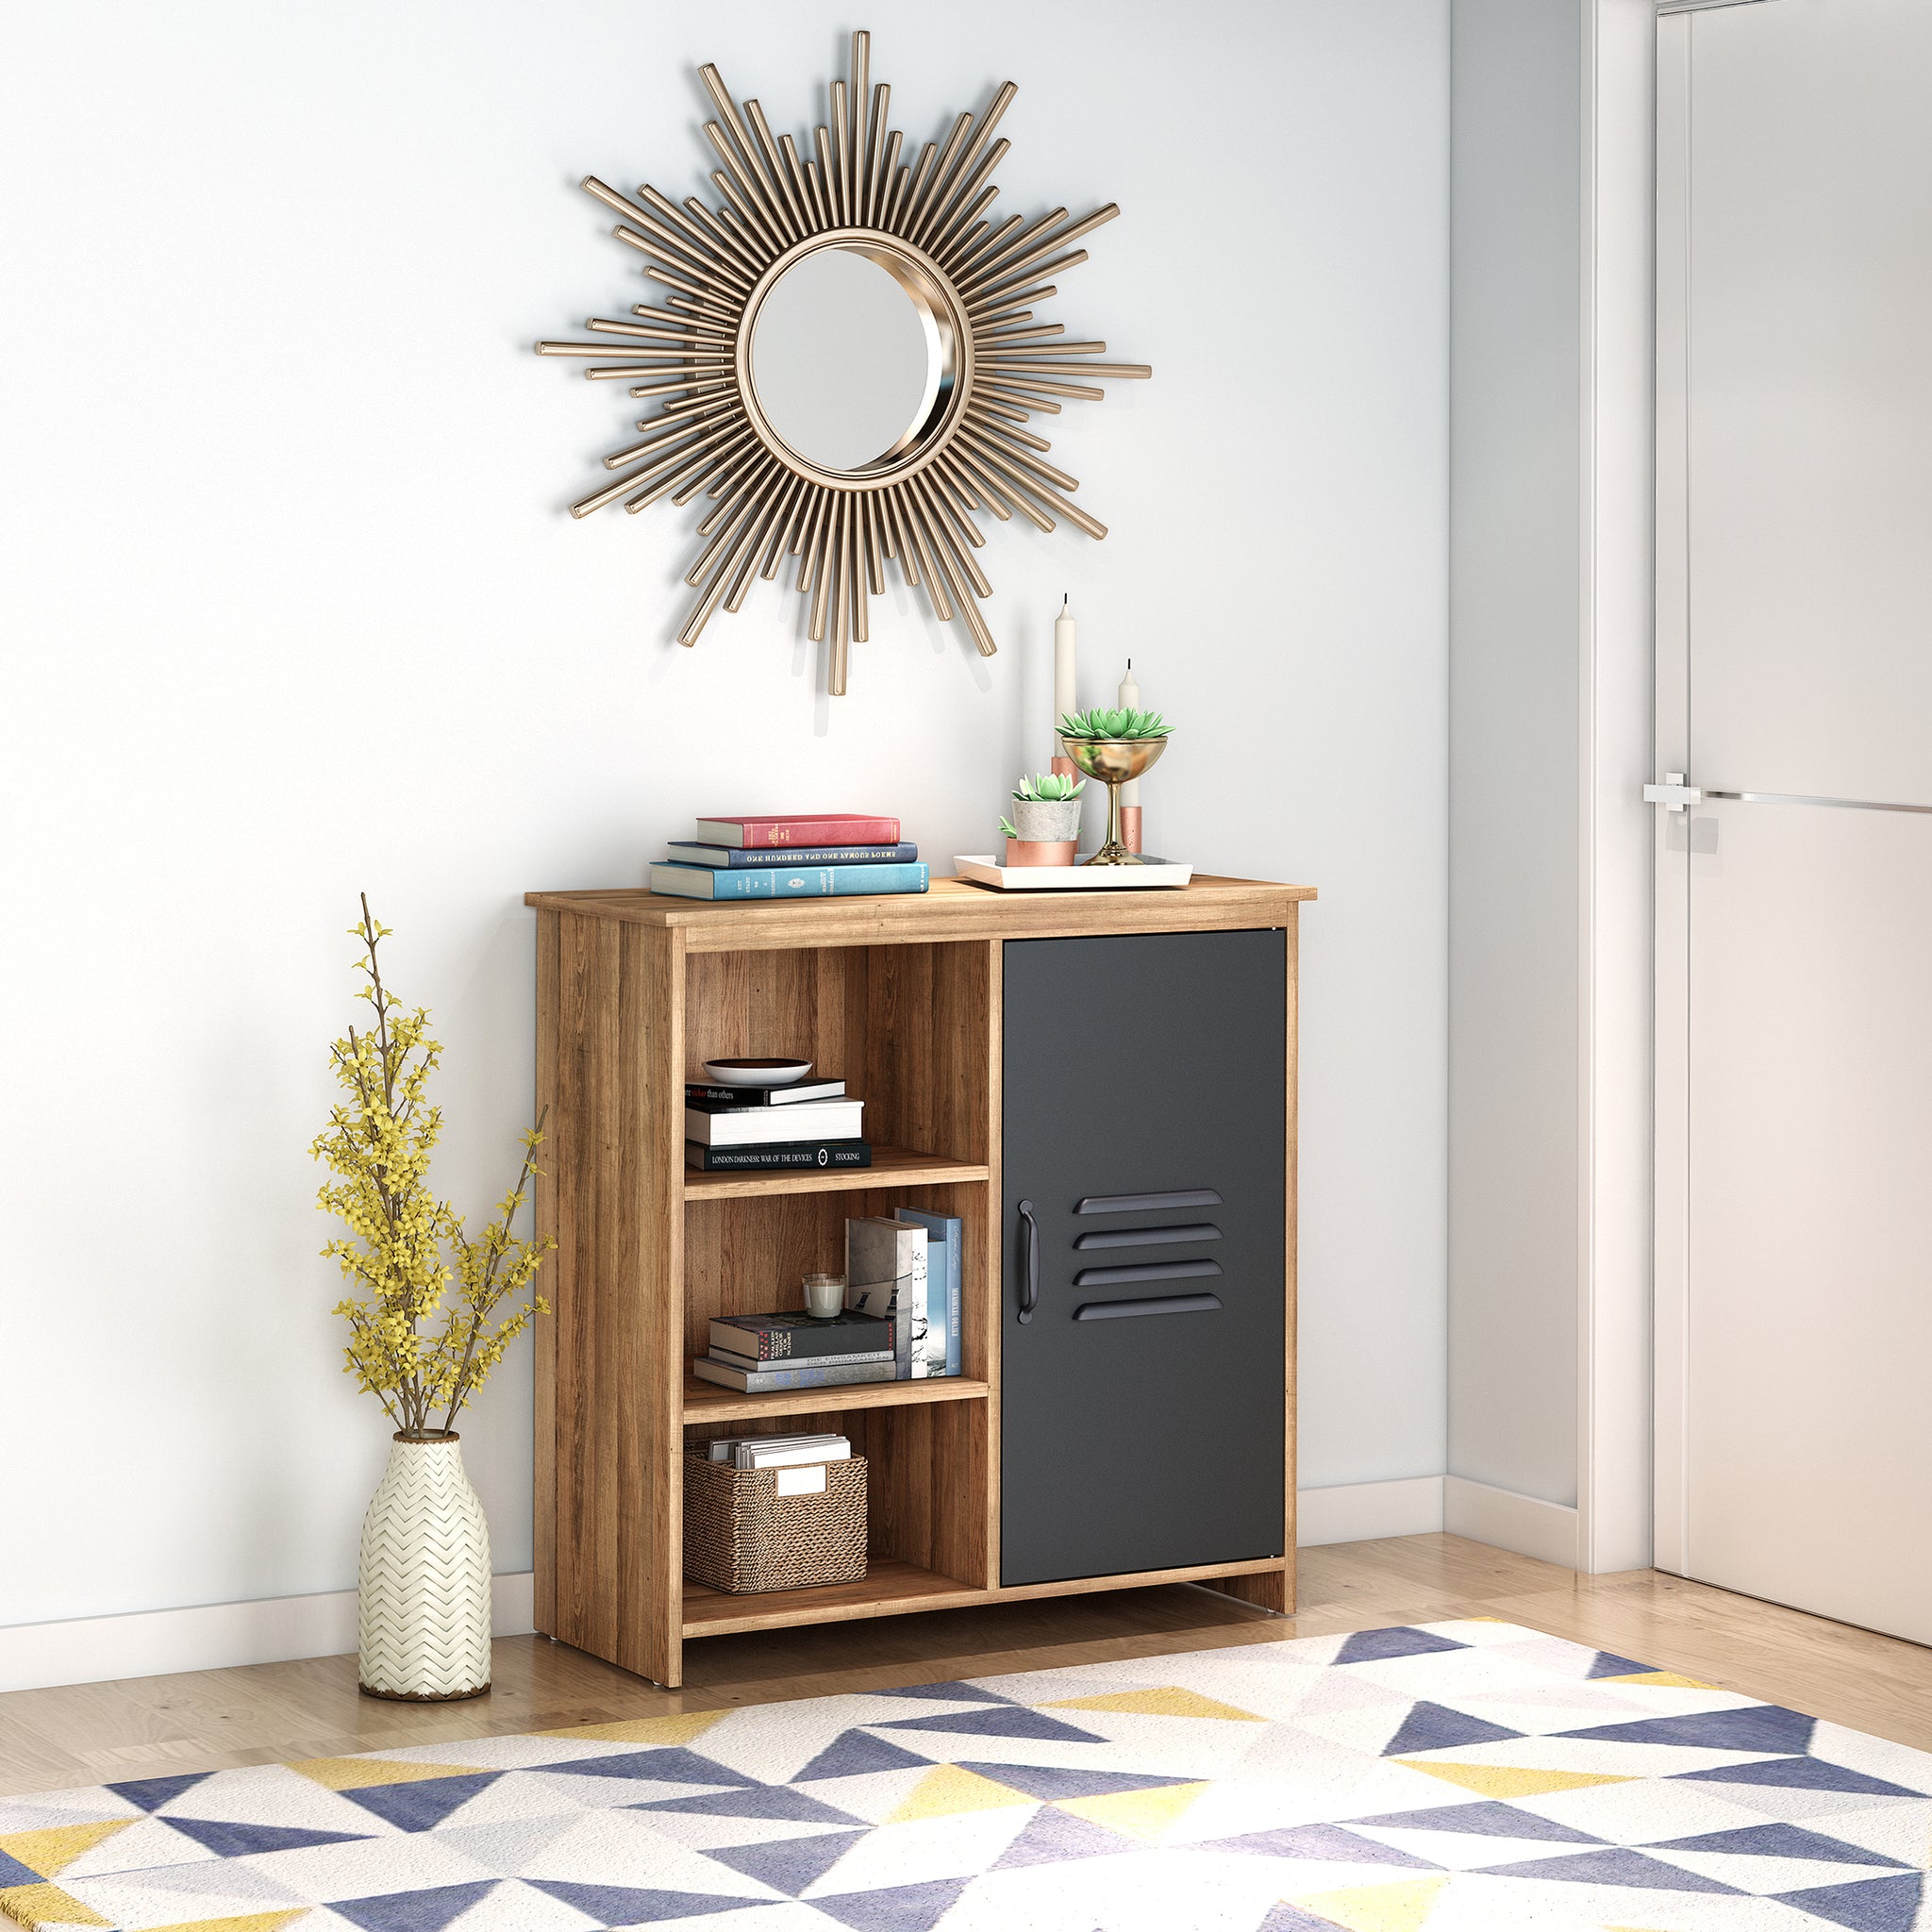 Clihome® | 1 Door Cabinet with 3 Open Space Shelves